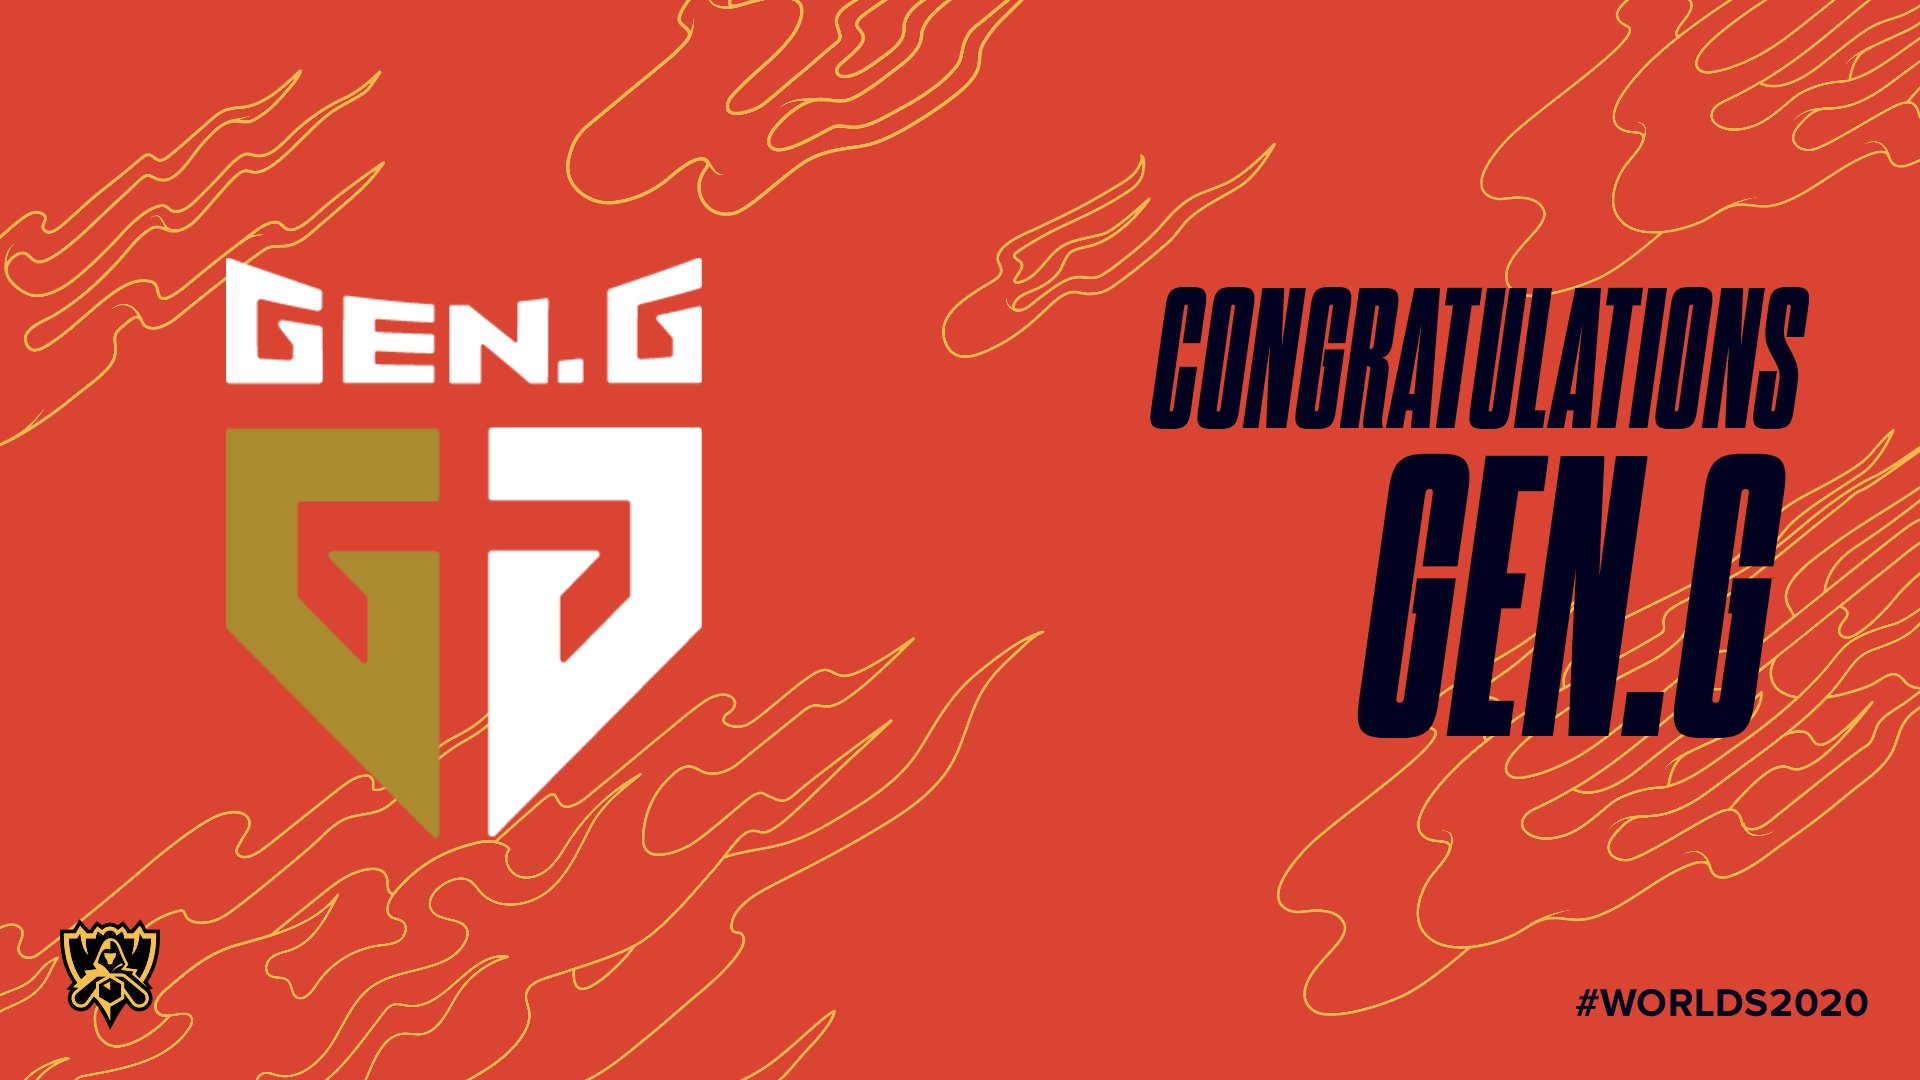 恭喜Gen.G将作为LCK三号种子进入S10 将直通小组赛